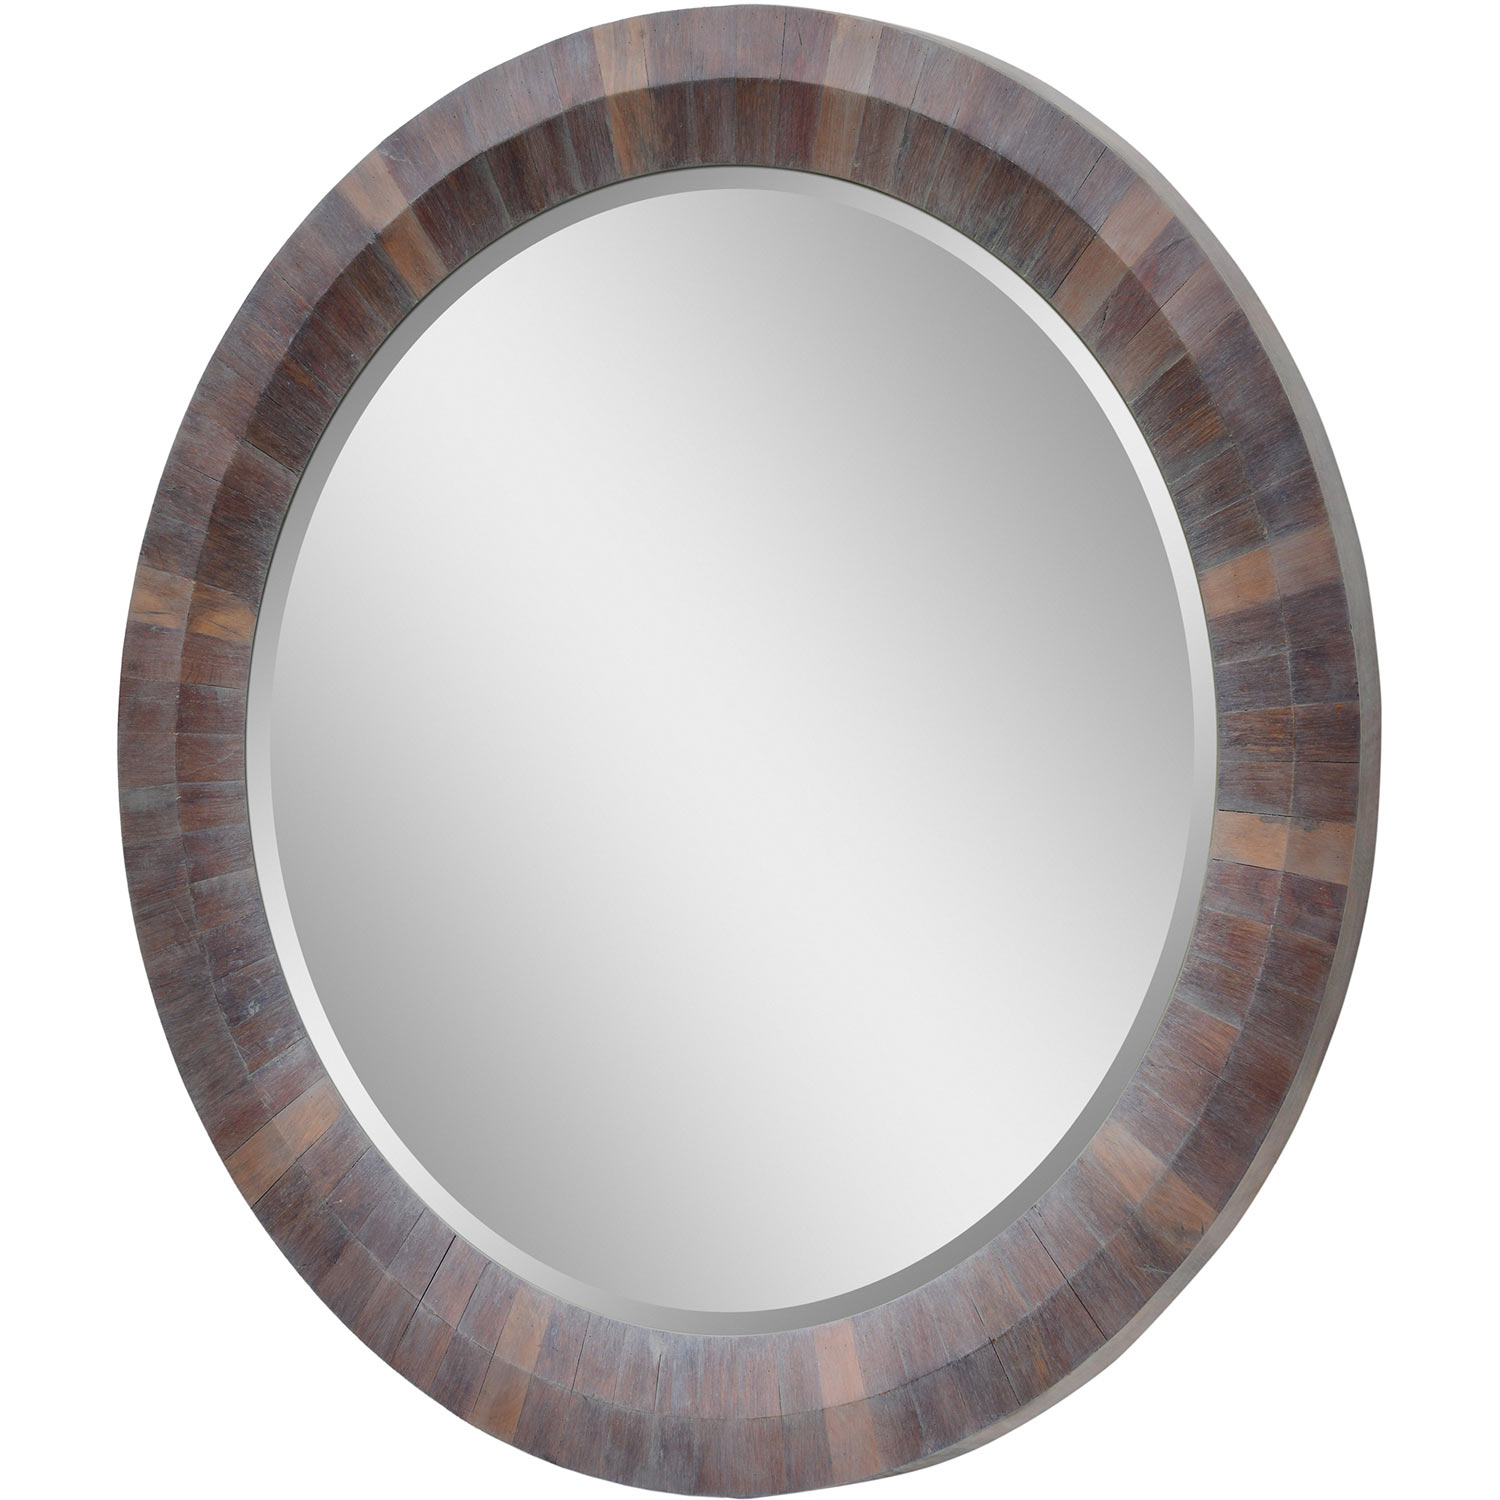 Ren-Wil Glendar Round Mirror - Gray